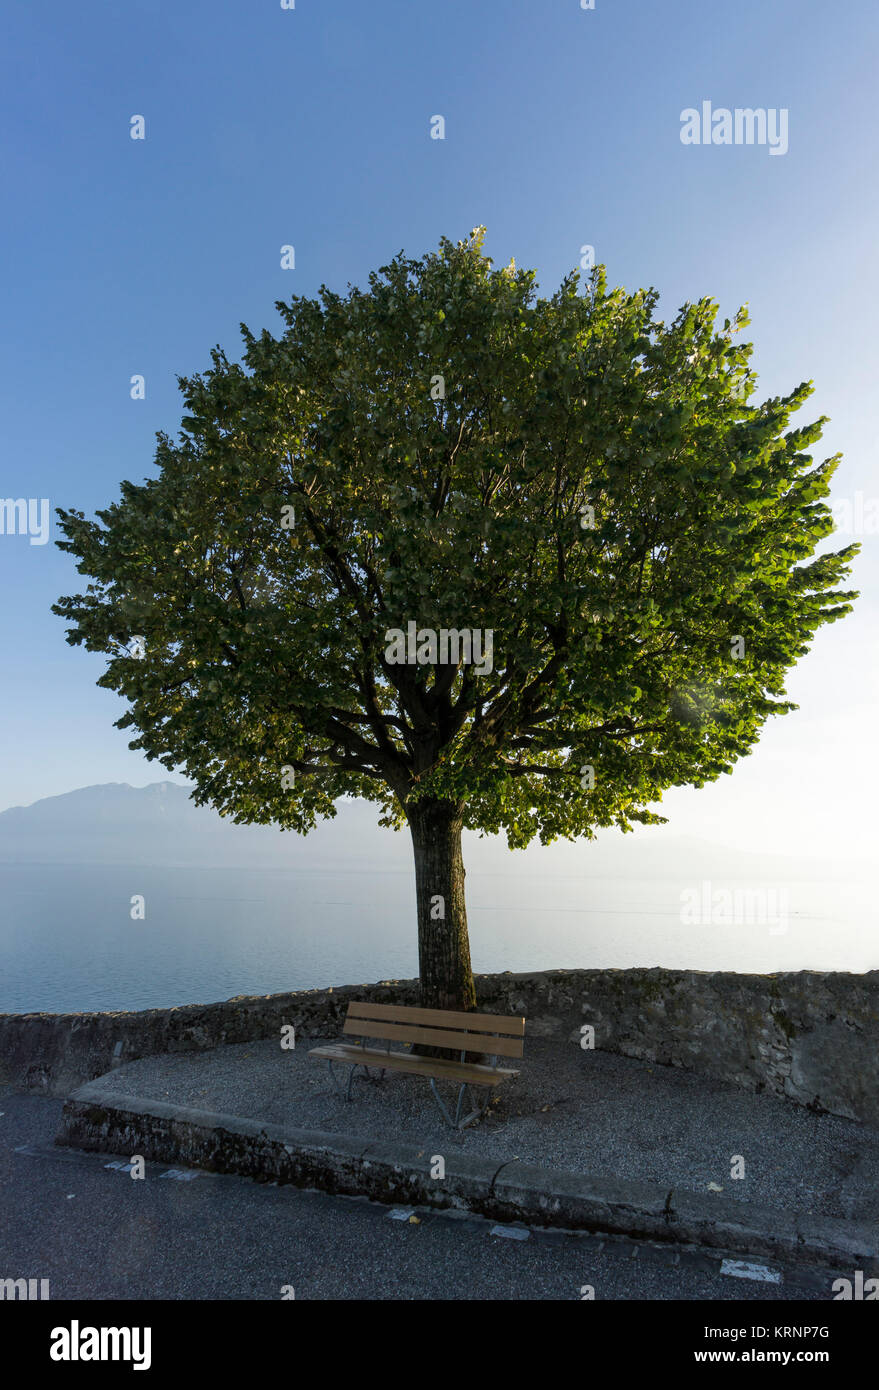 Baum, Puidoux, Lavaux, den Genfer See, die Schweizer Alpen, Schweiz Stockfoto